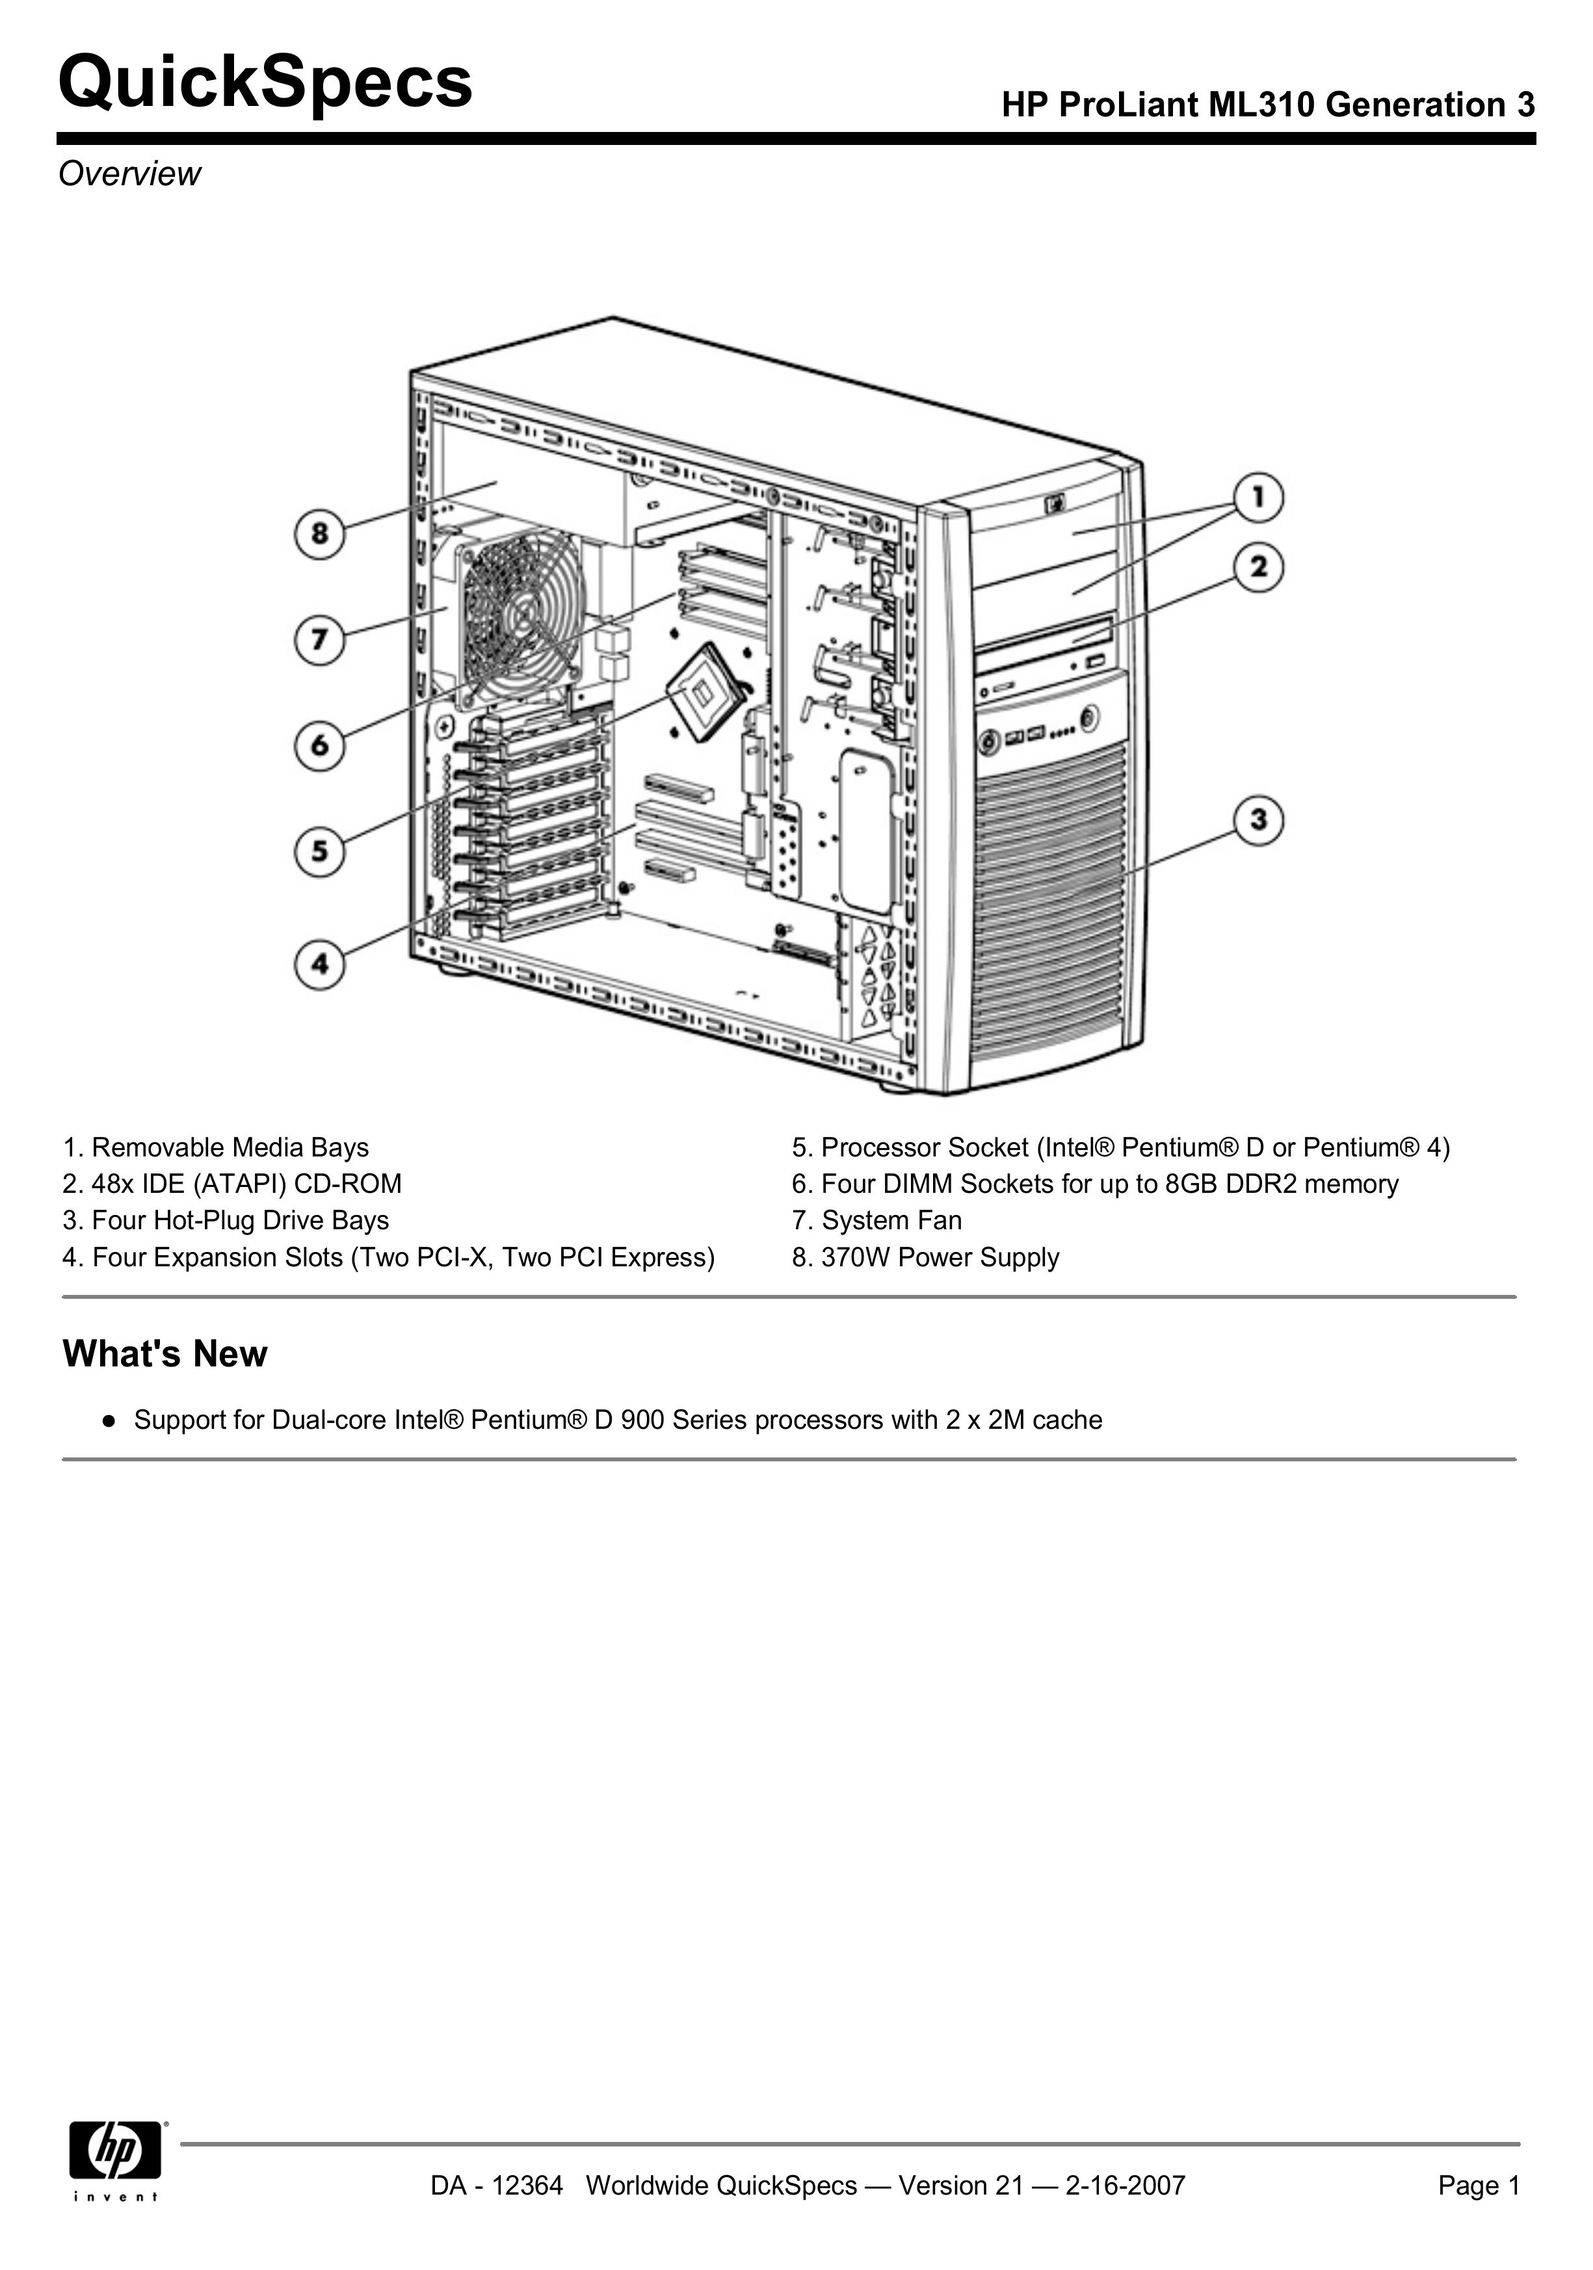 HP (Hewlett-Packard) ML310 Computer Hardware User Manual